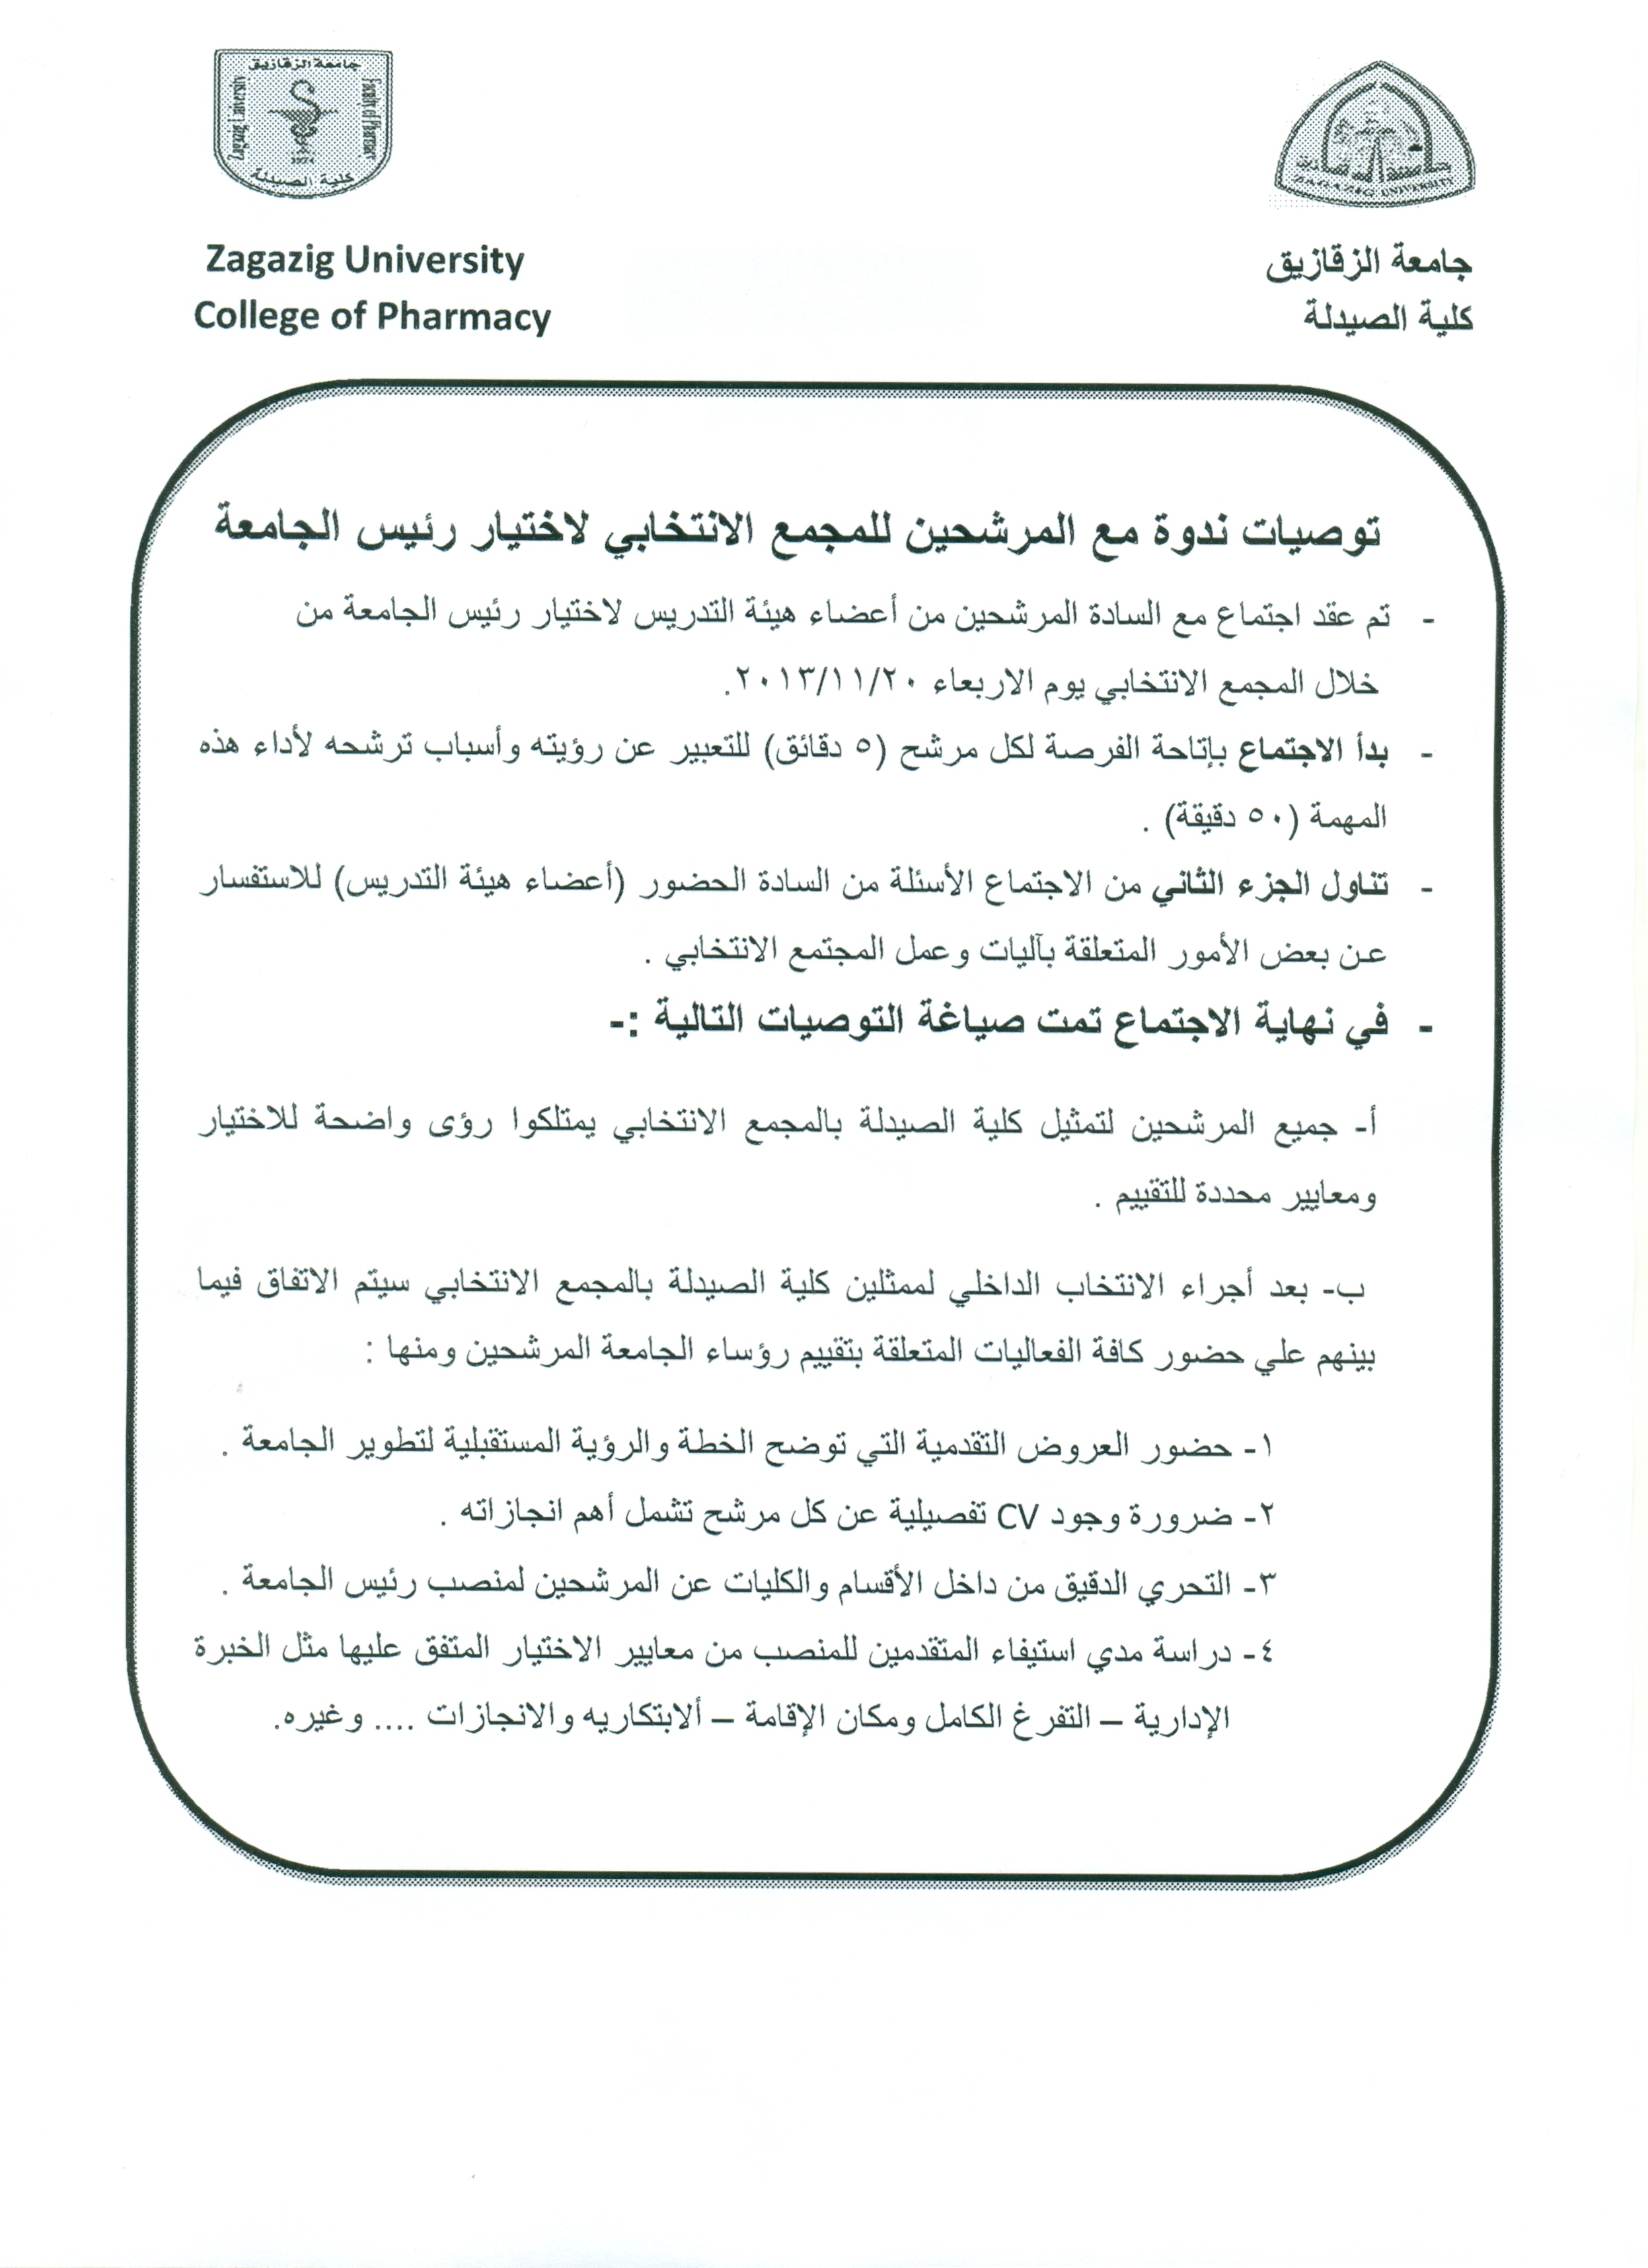 توصيات ندوة مع المرشحين للمجمع الإنتخابى لإختيار رئيس الجامعة المنعقده يوم 20/11/2013